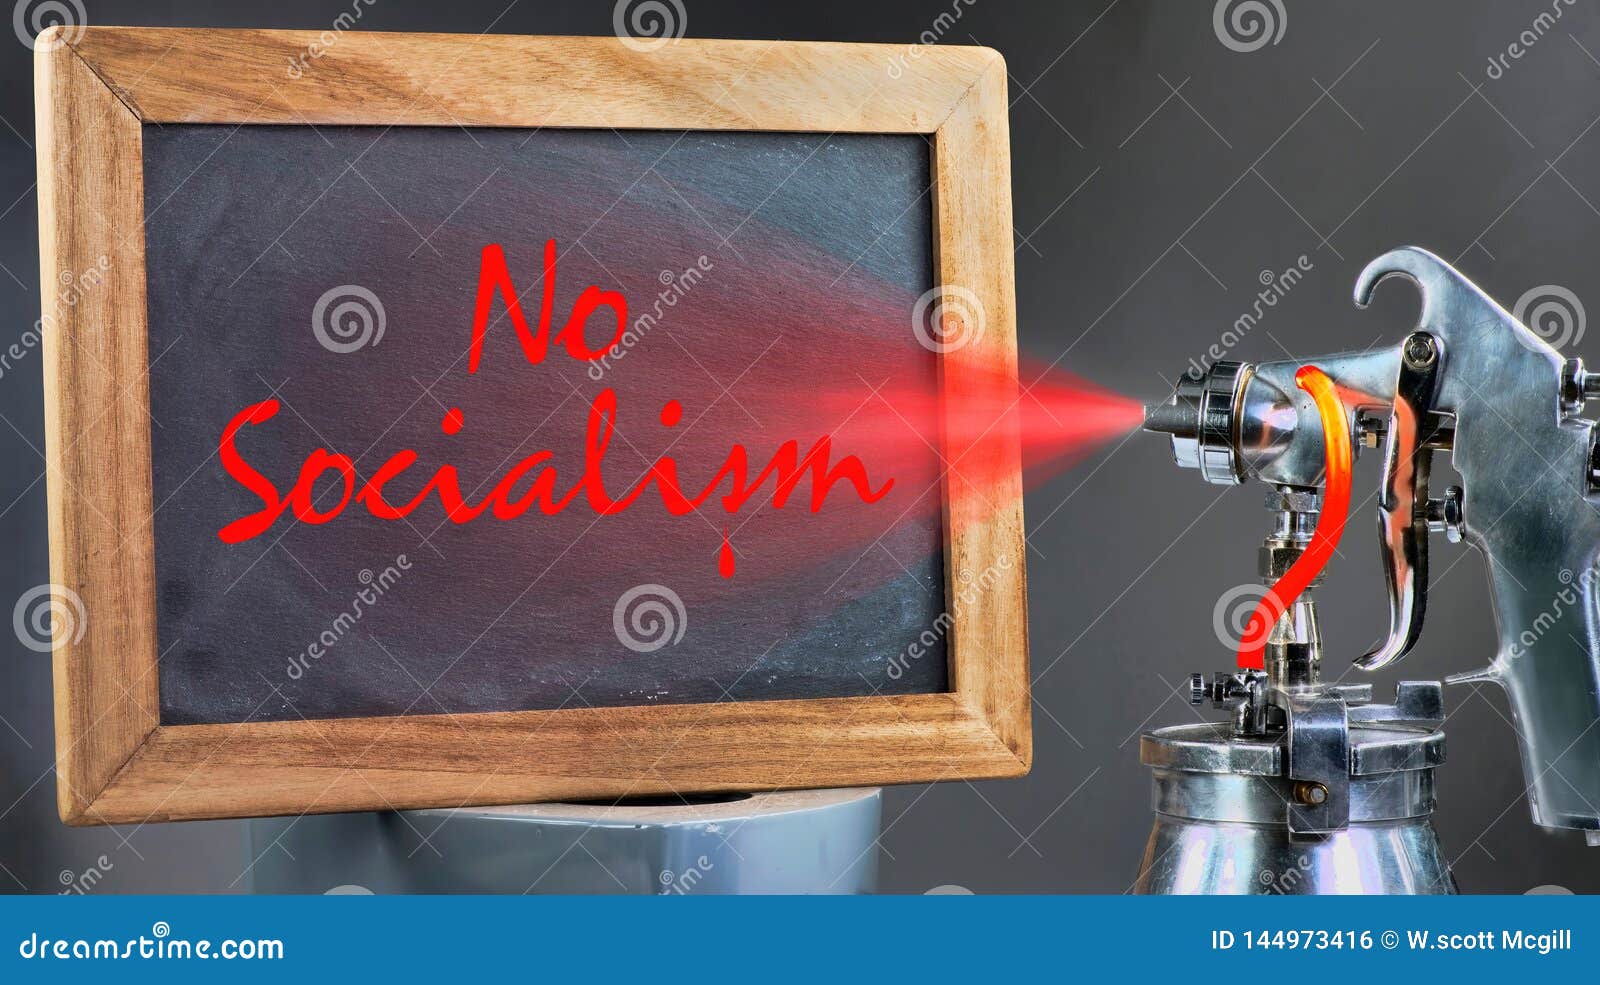 no socialism paint